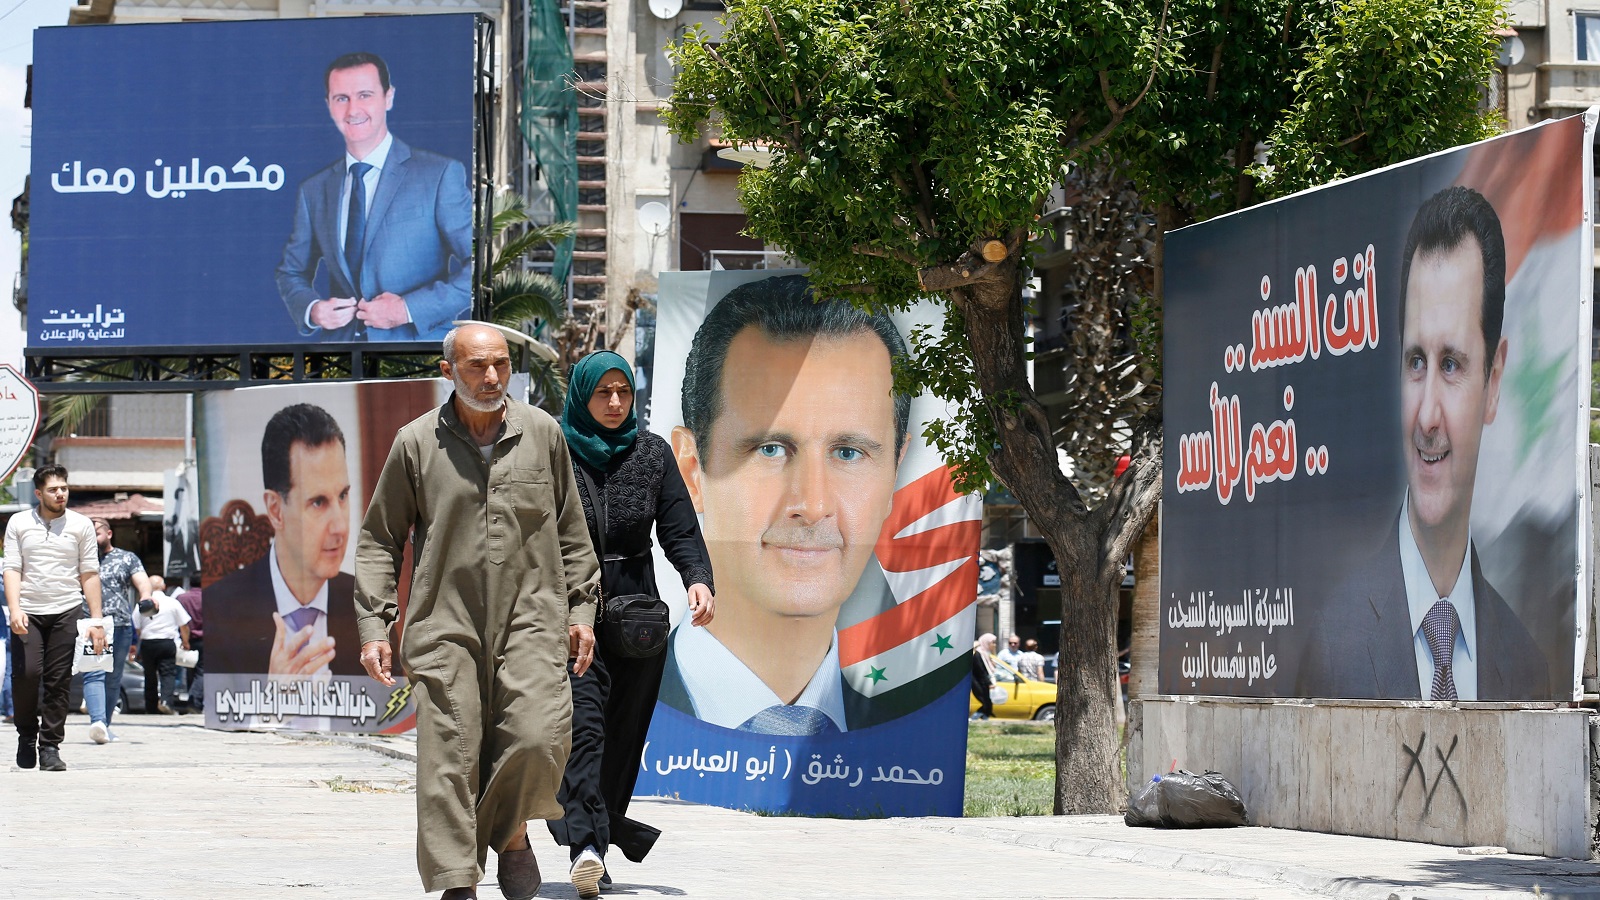 لماذا يصرّ الأسد على تقديم نفسه كقائد ديموقراطي؟